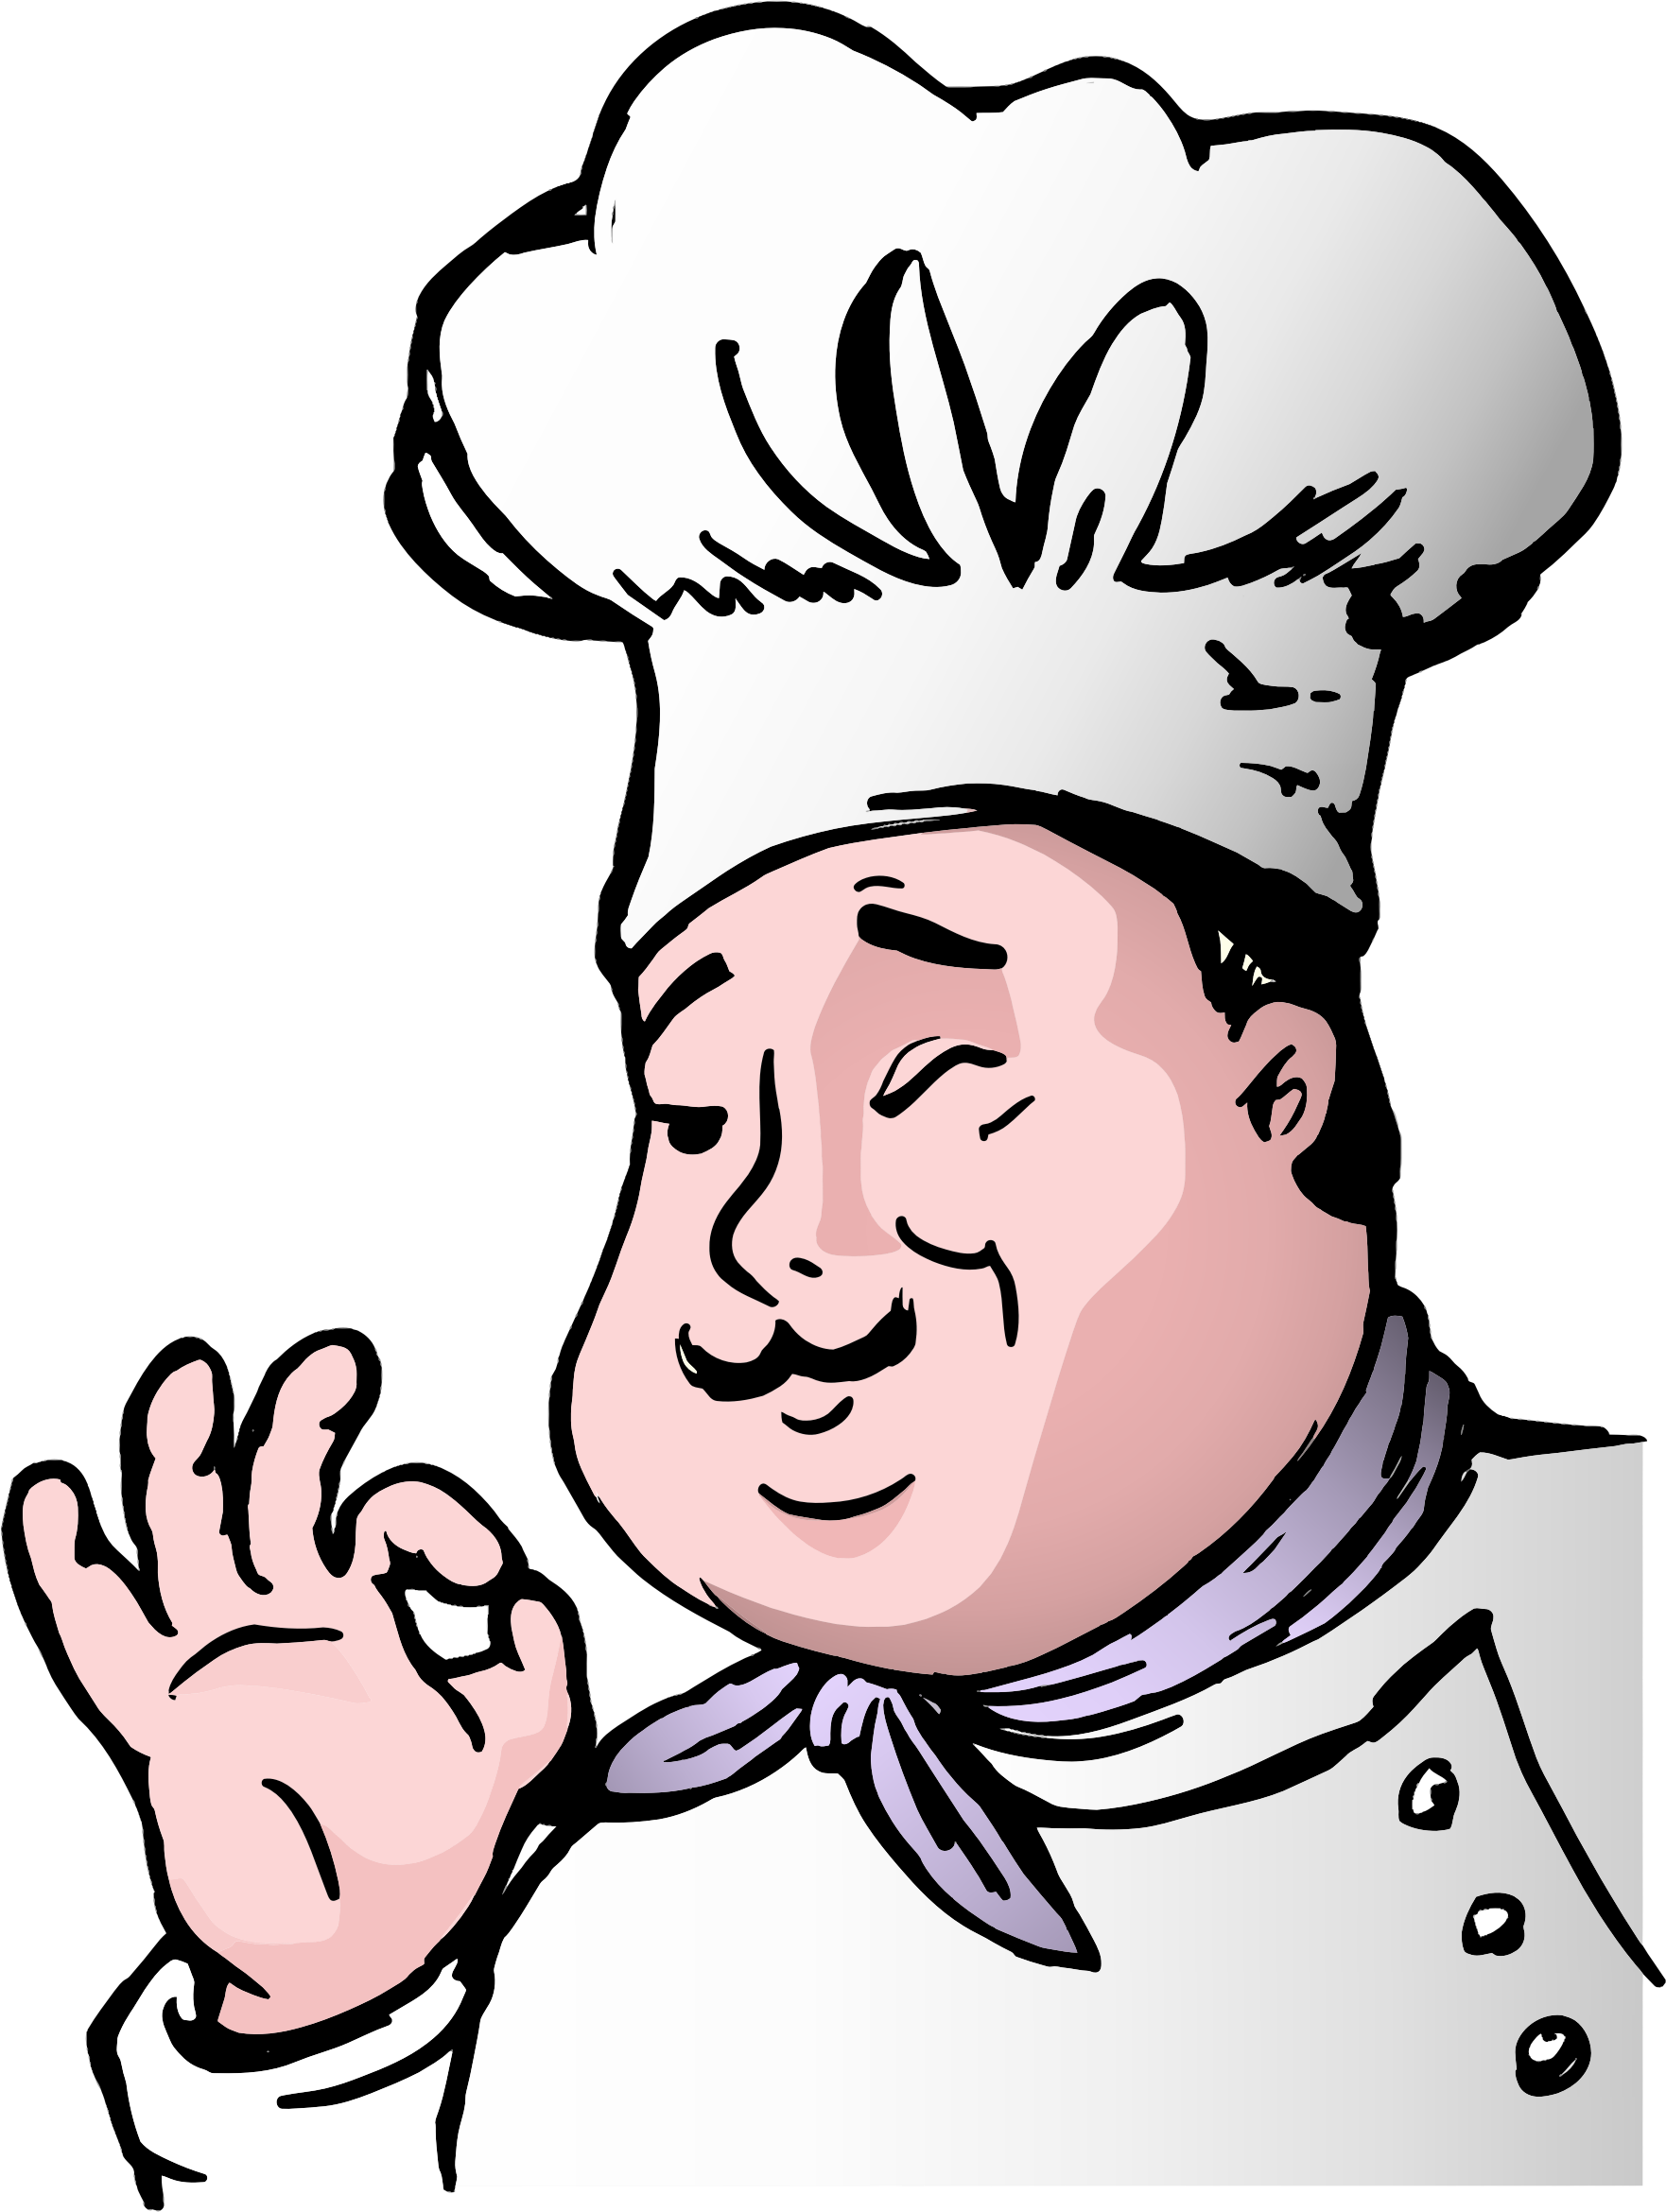 Clipart Chef